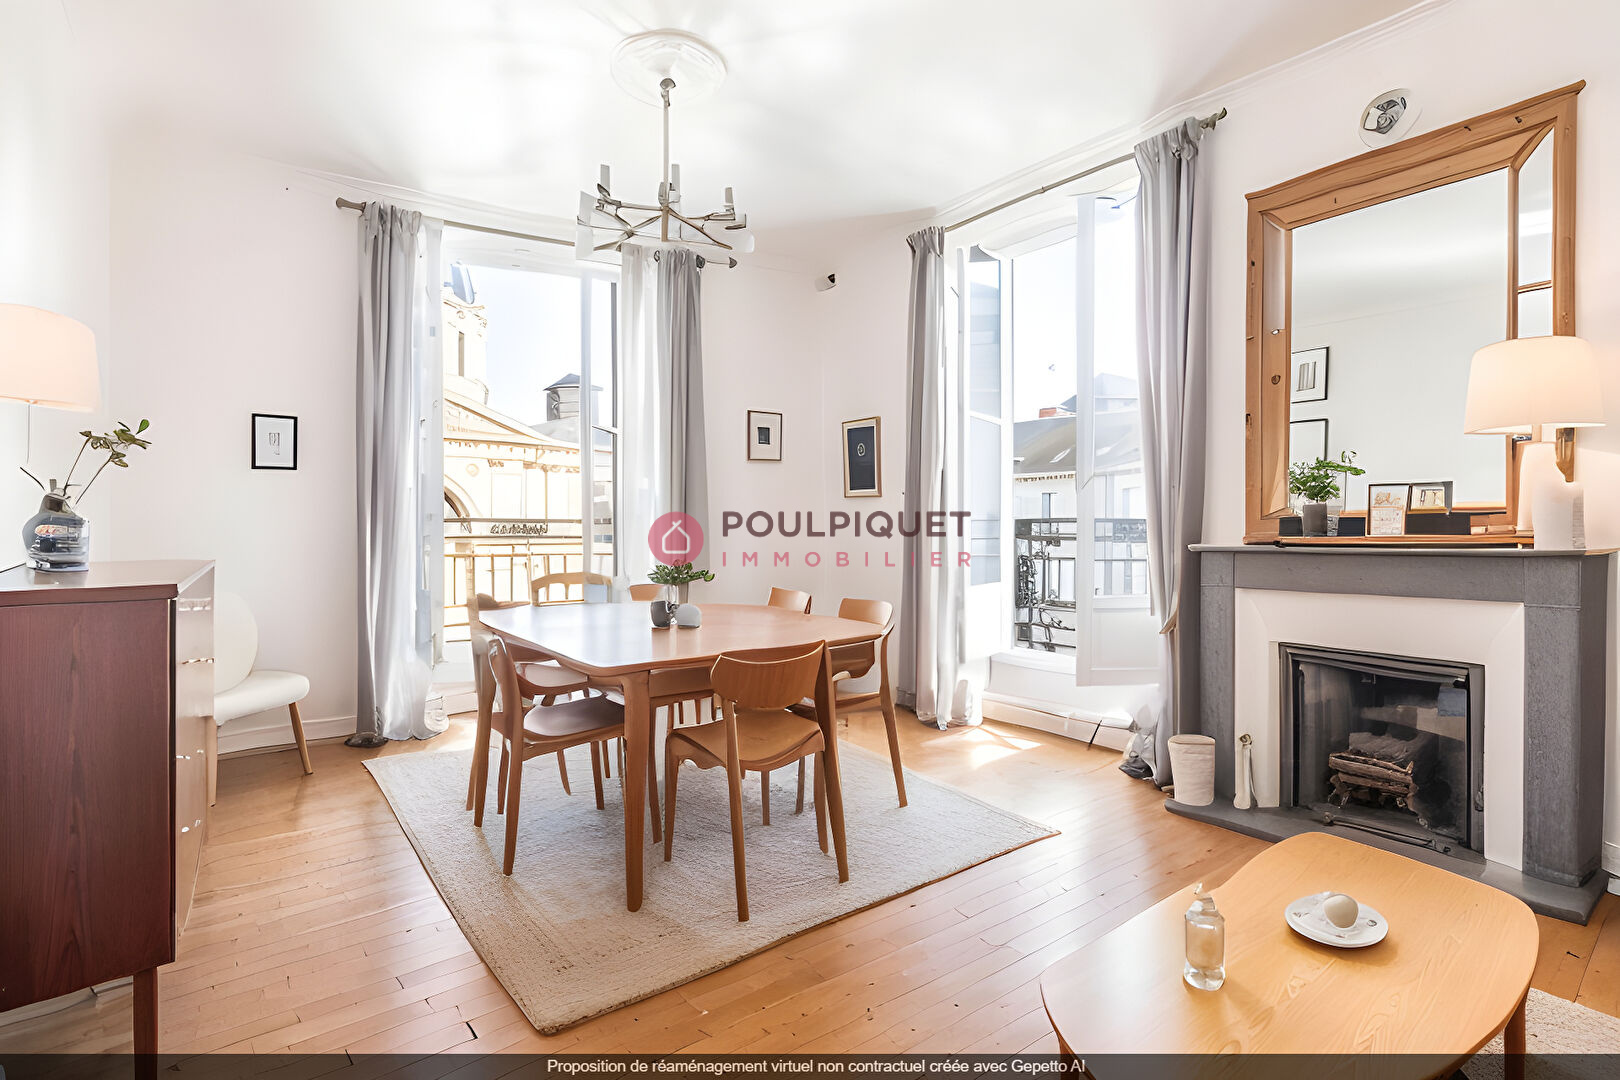 Vente Appartement 112m² 4 Pièces à Nantes (44000) - Poulpiquet Immobilier